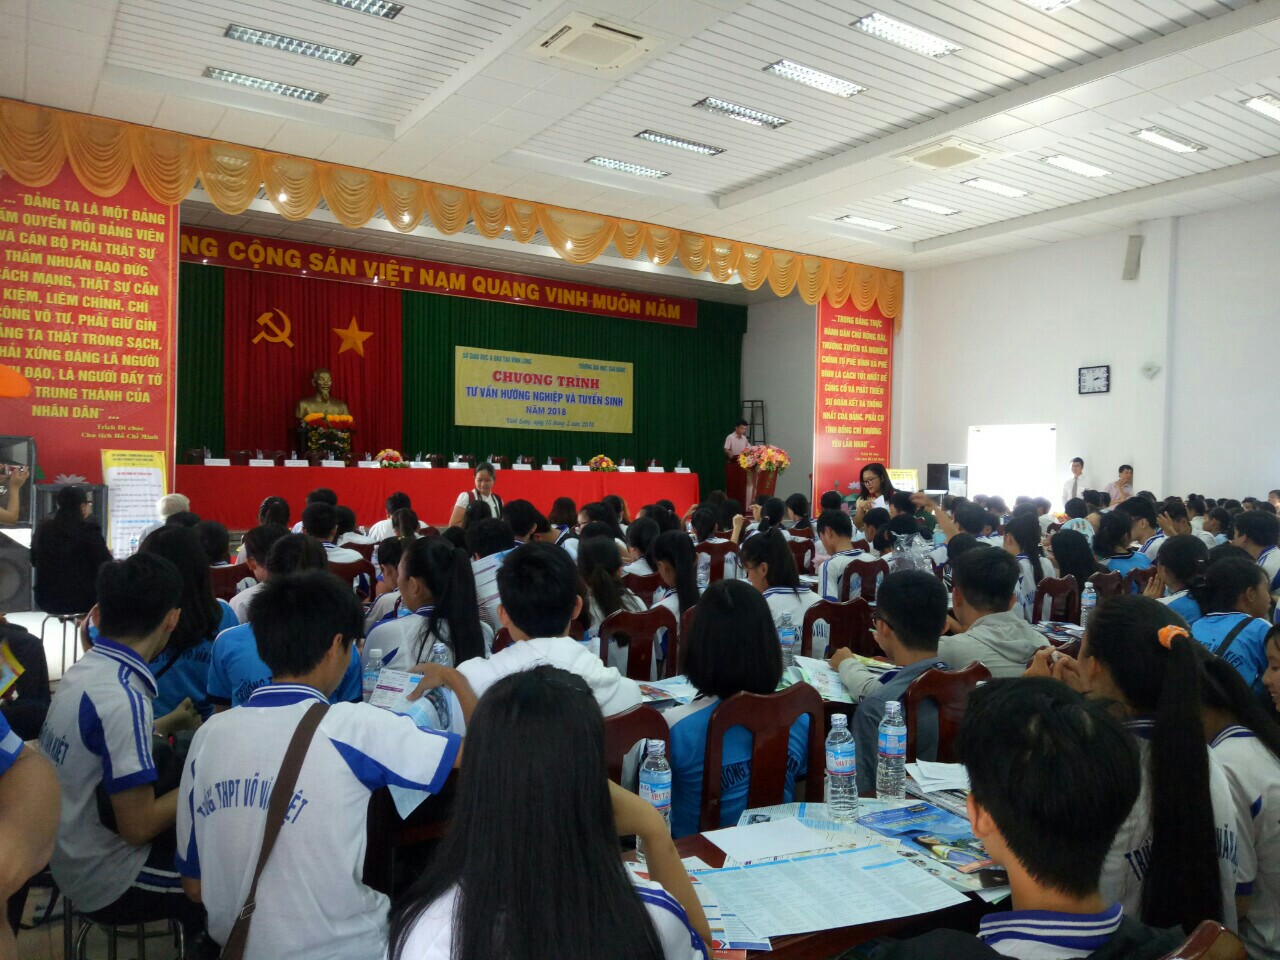 Phân hiệu ĐHQG-HCM tại tỉnh Bến Tre tư vấn tuyển sinh 2018 tại địa bàn tỉnh Vĩnh Long